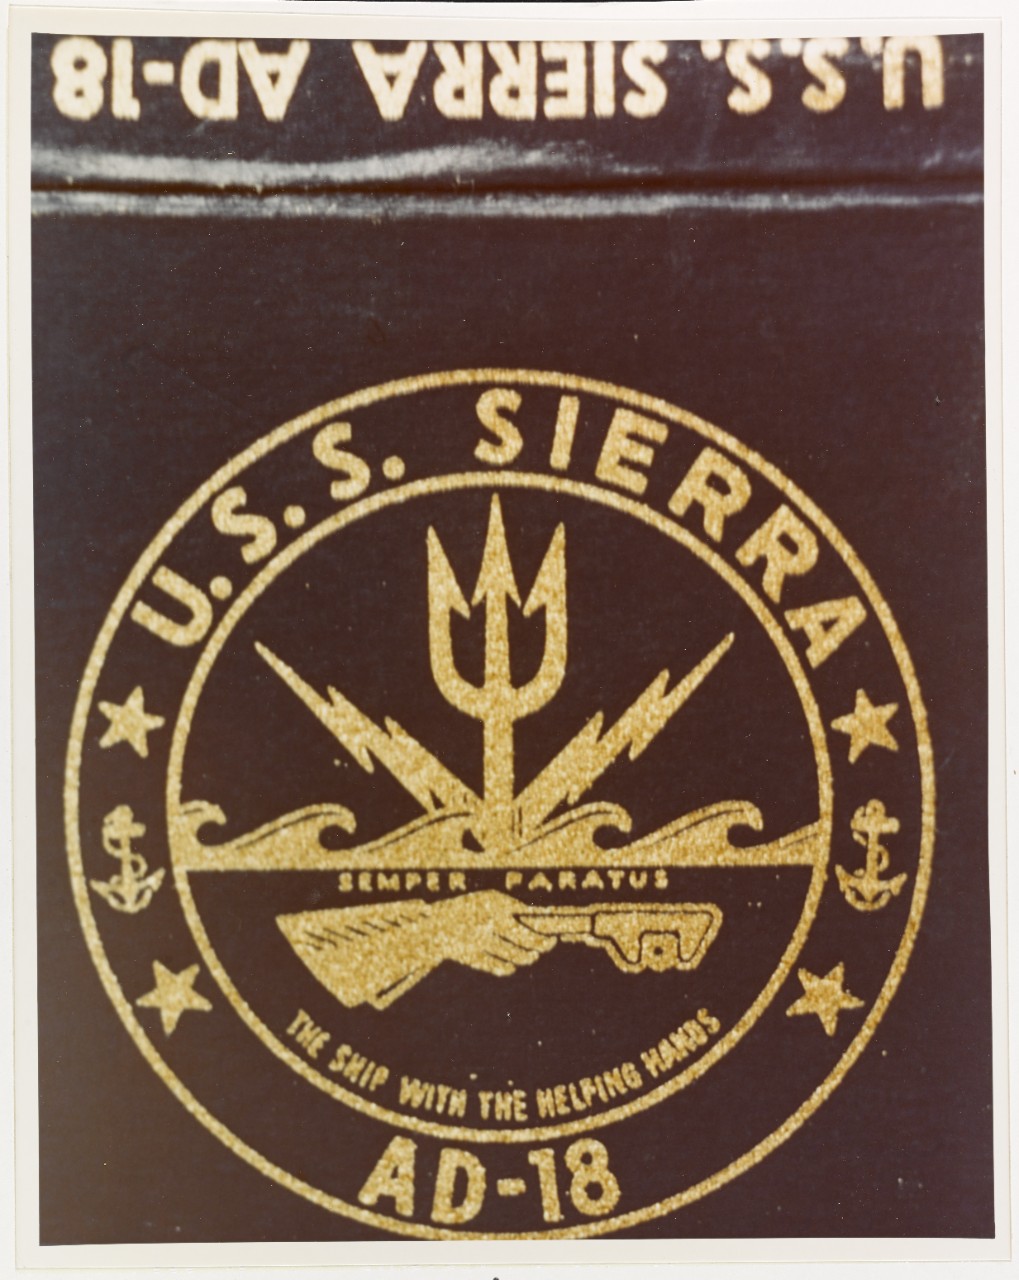 Insignia: USS SIERRA (AD-18)